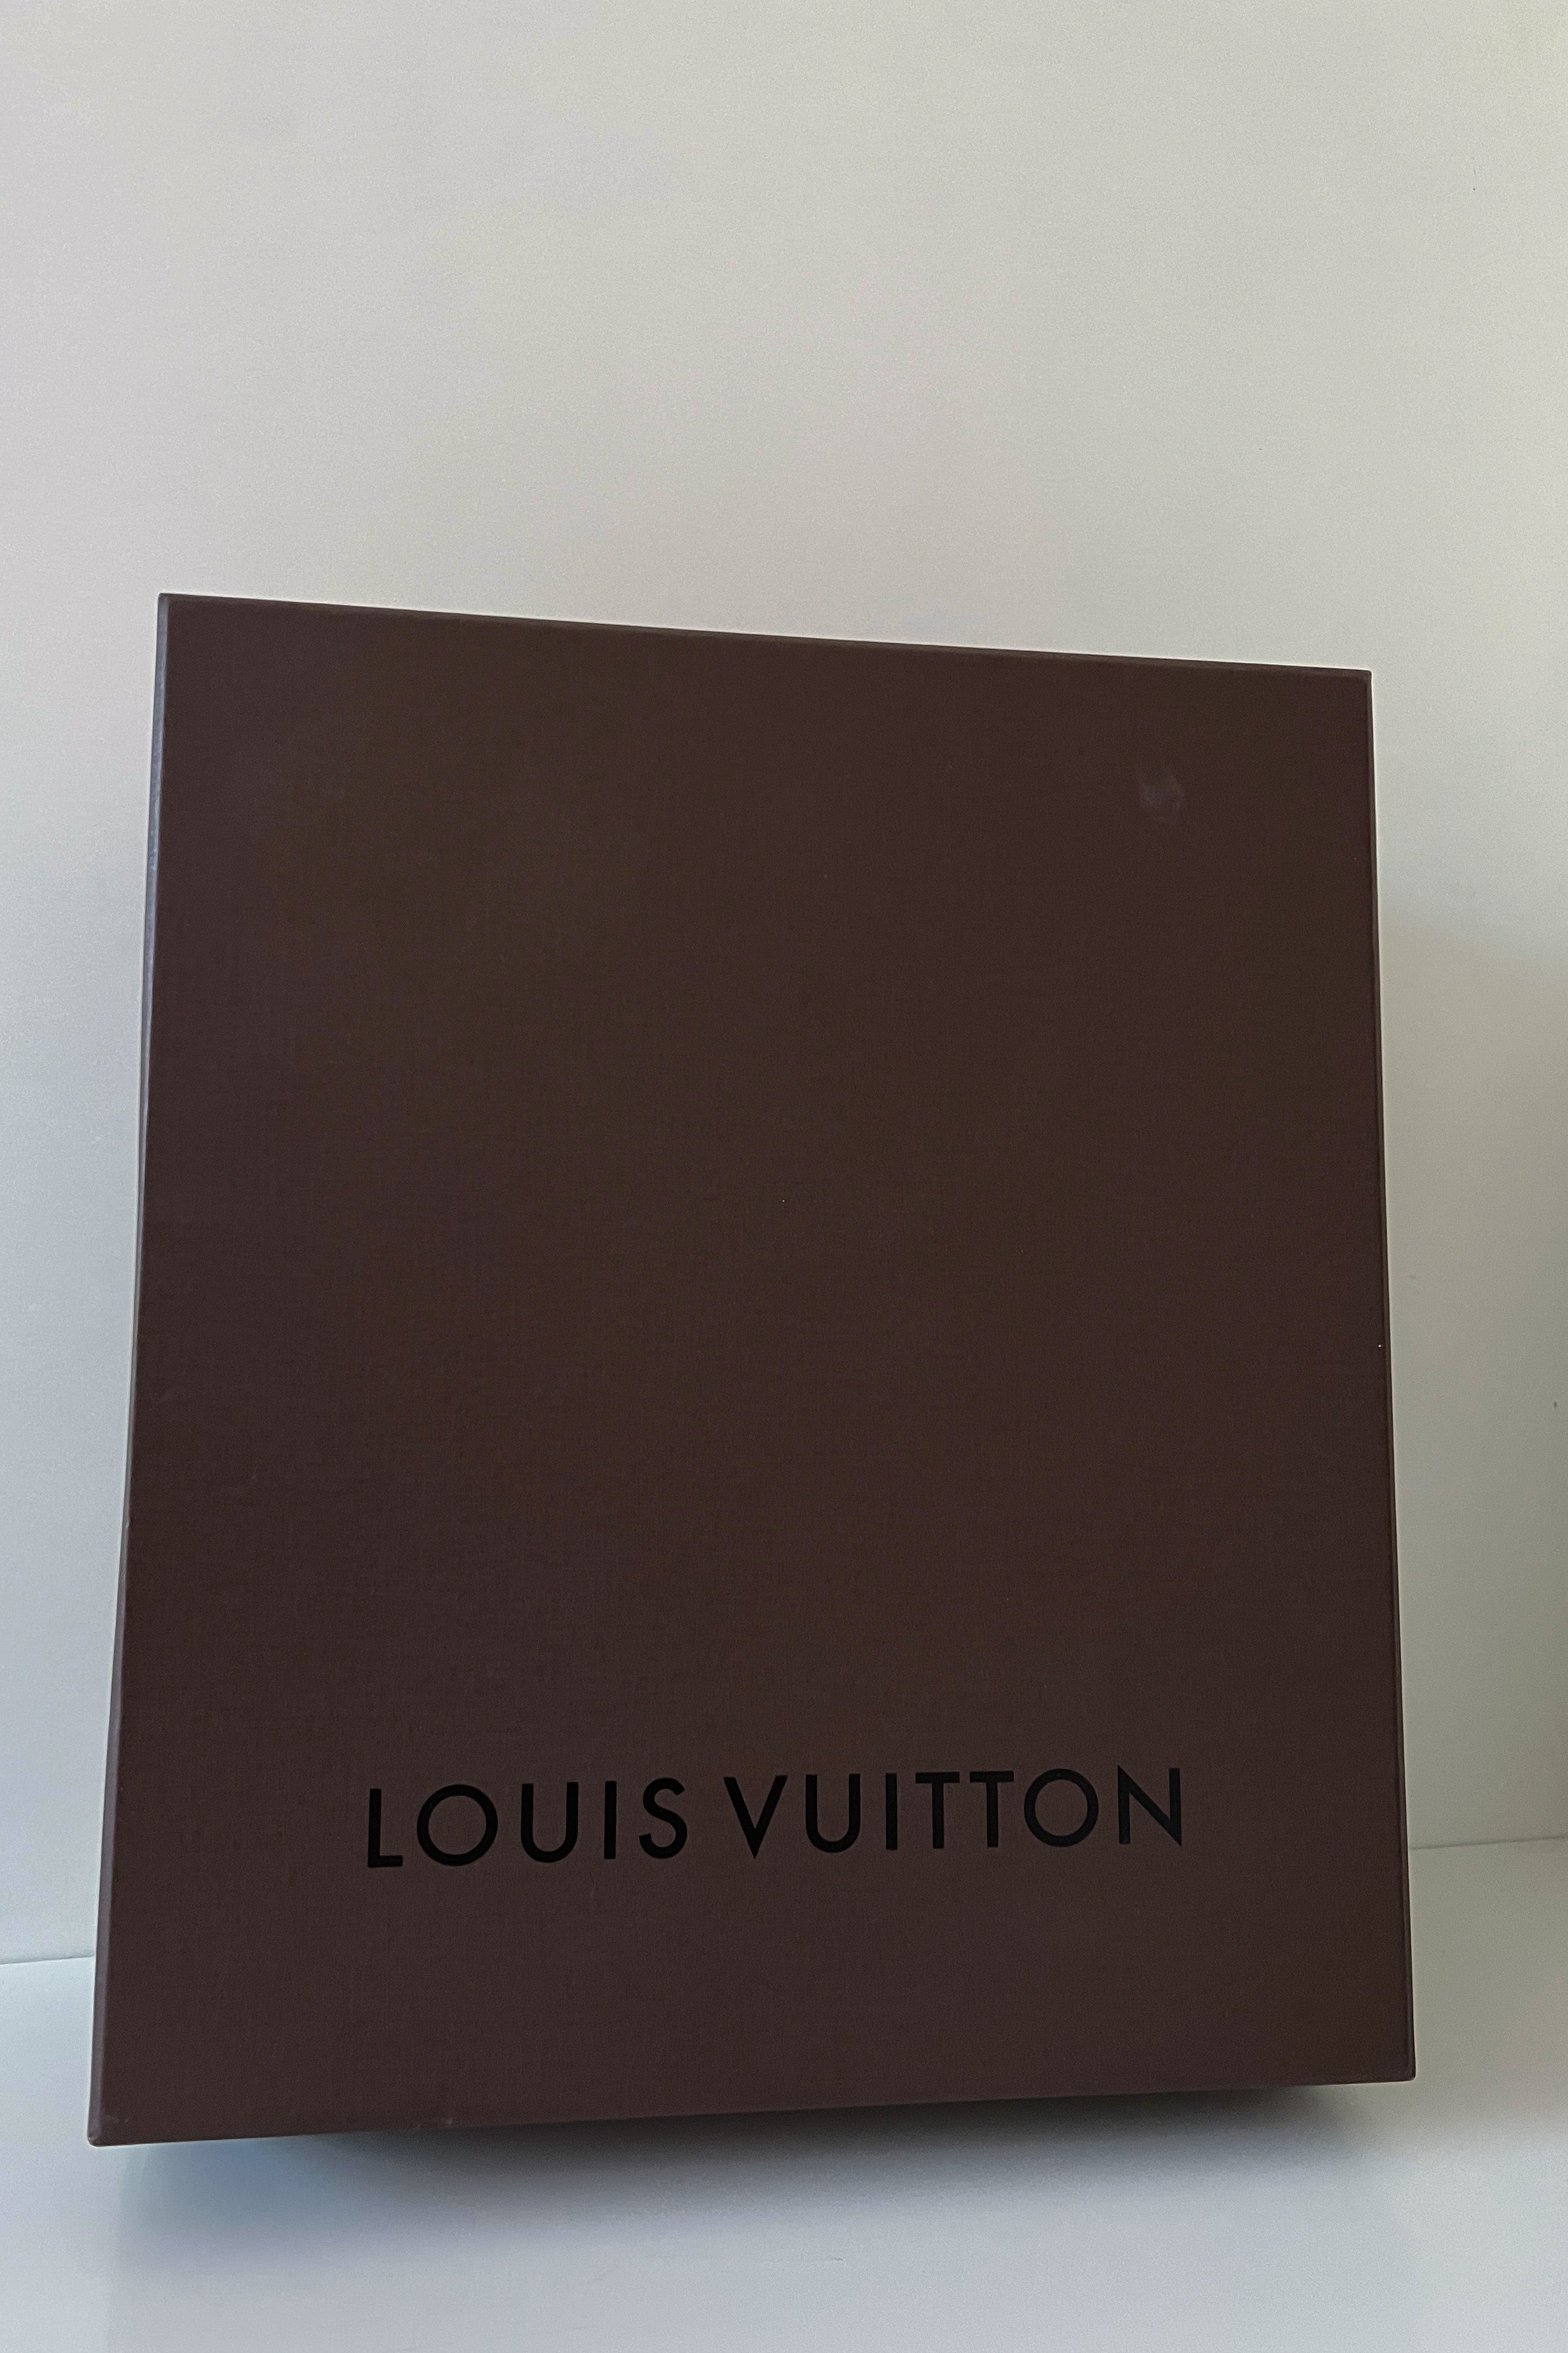 Louis Vuitton Sonatine Monogram - THE PURSE AFFAIR